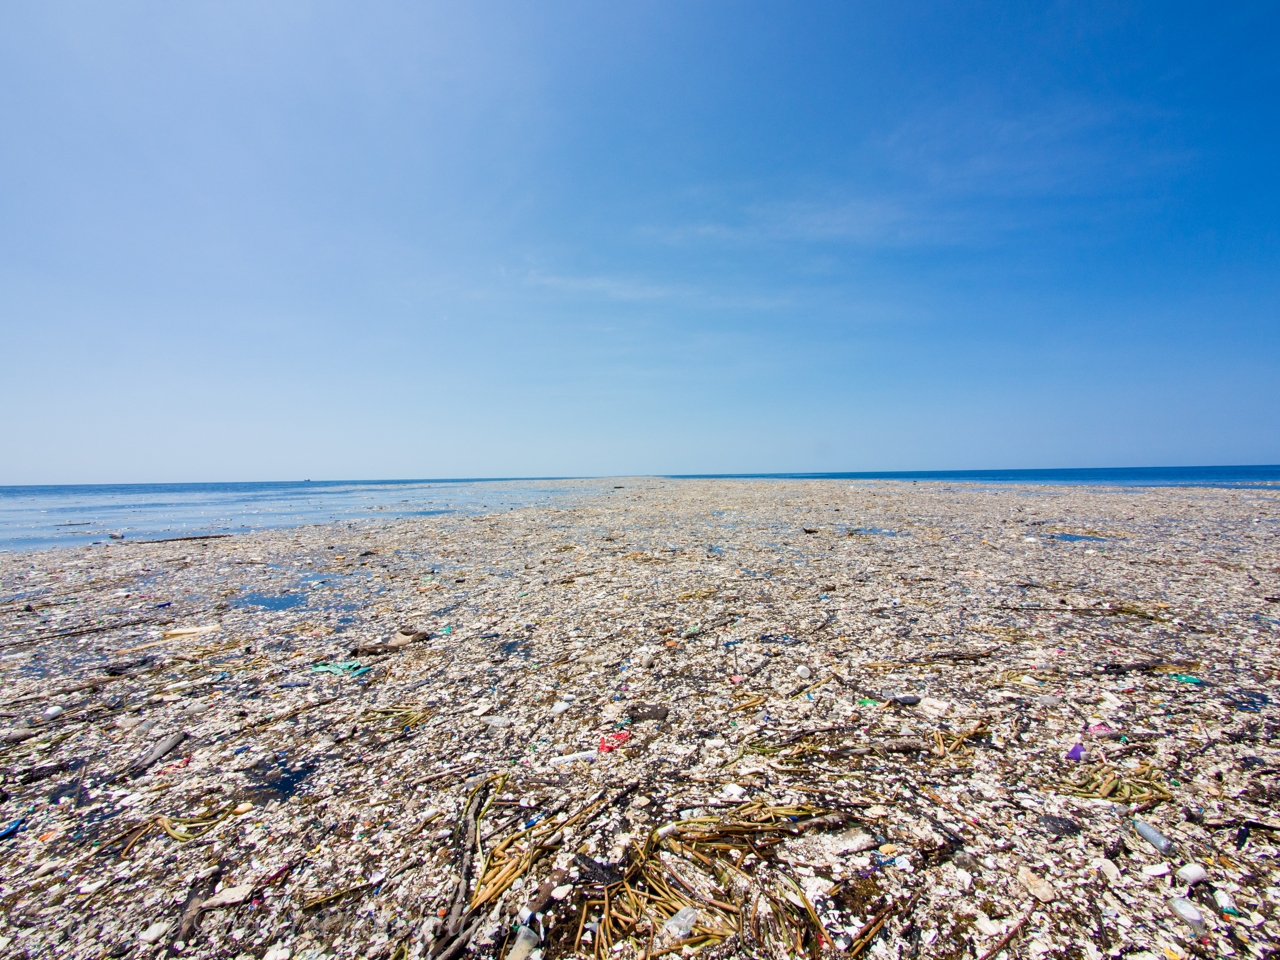 мусорные острова в океане